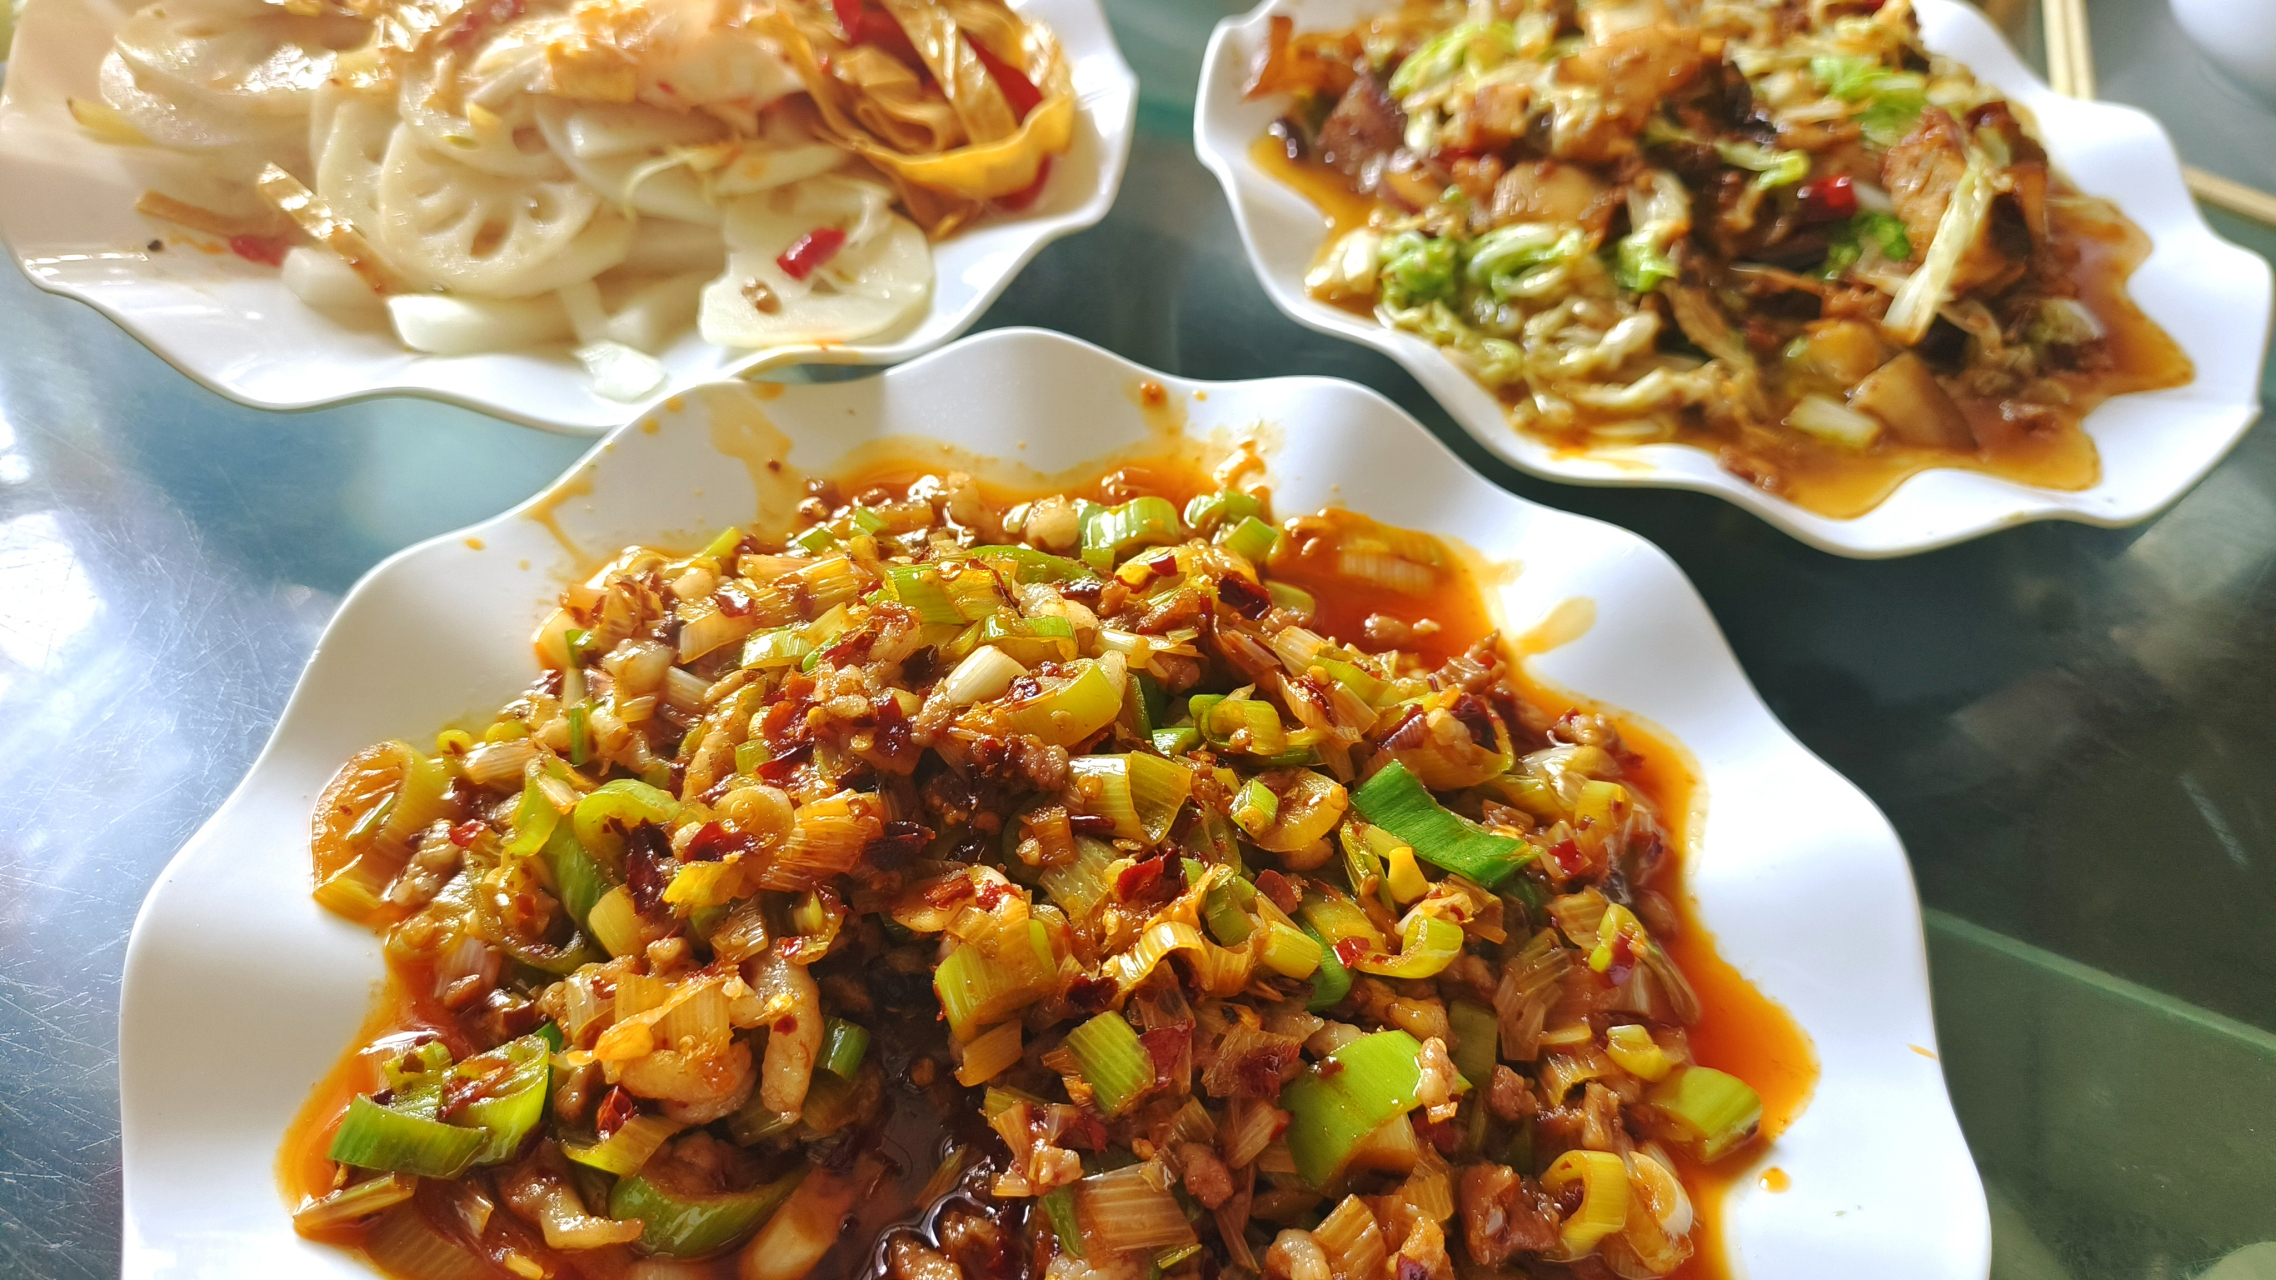 河南濮阳范县濮城的特色美食:杂拌和肉沫辣椒,配上馒头你能吃几碗?